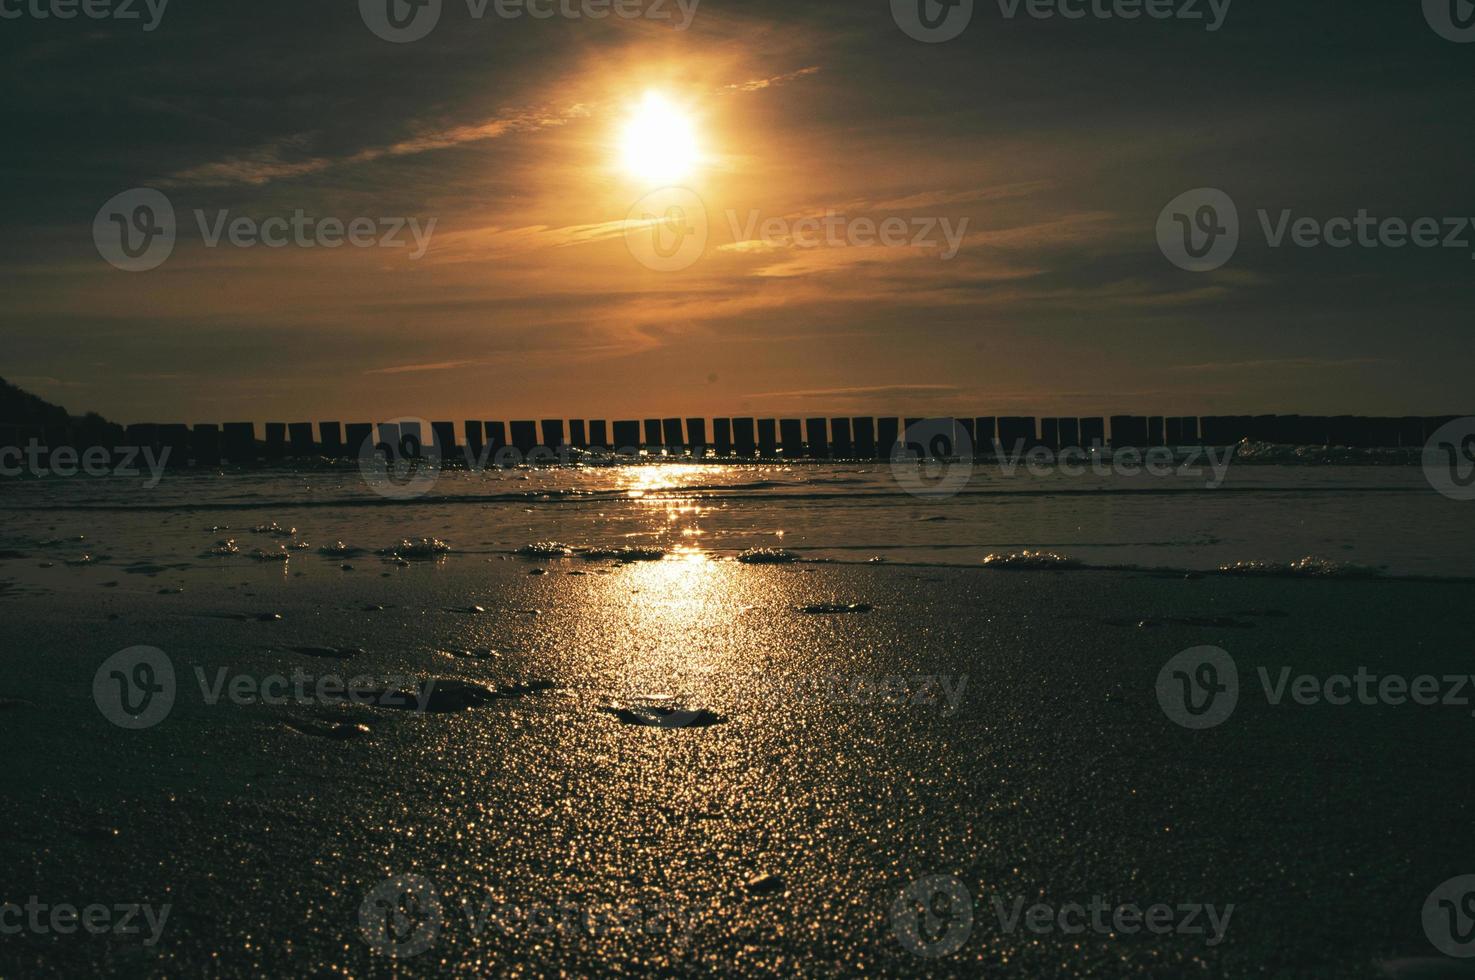 tramonto a Zingst al mare. il sole rosso arancio tramonta all'orizzonte. i gabbiani girano nel cielo foto